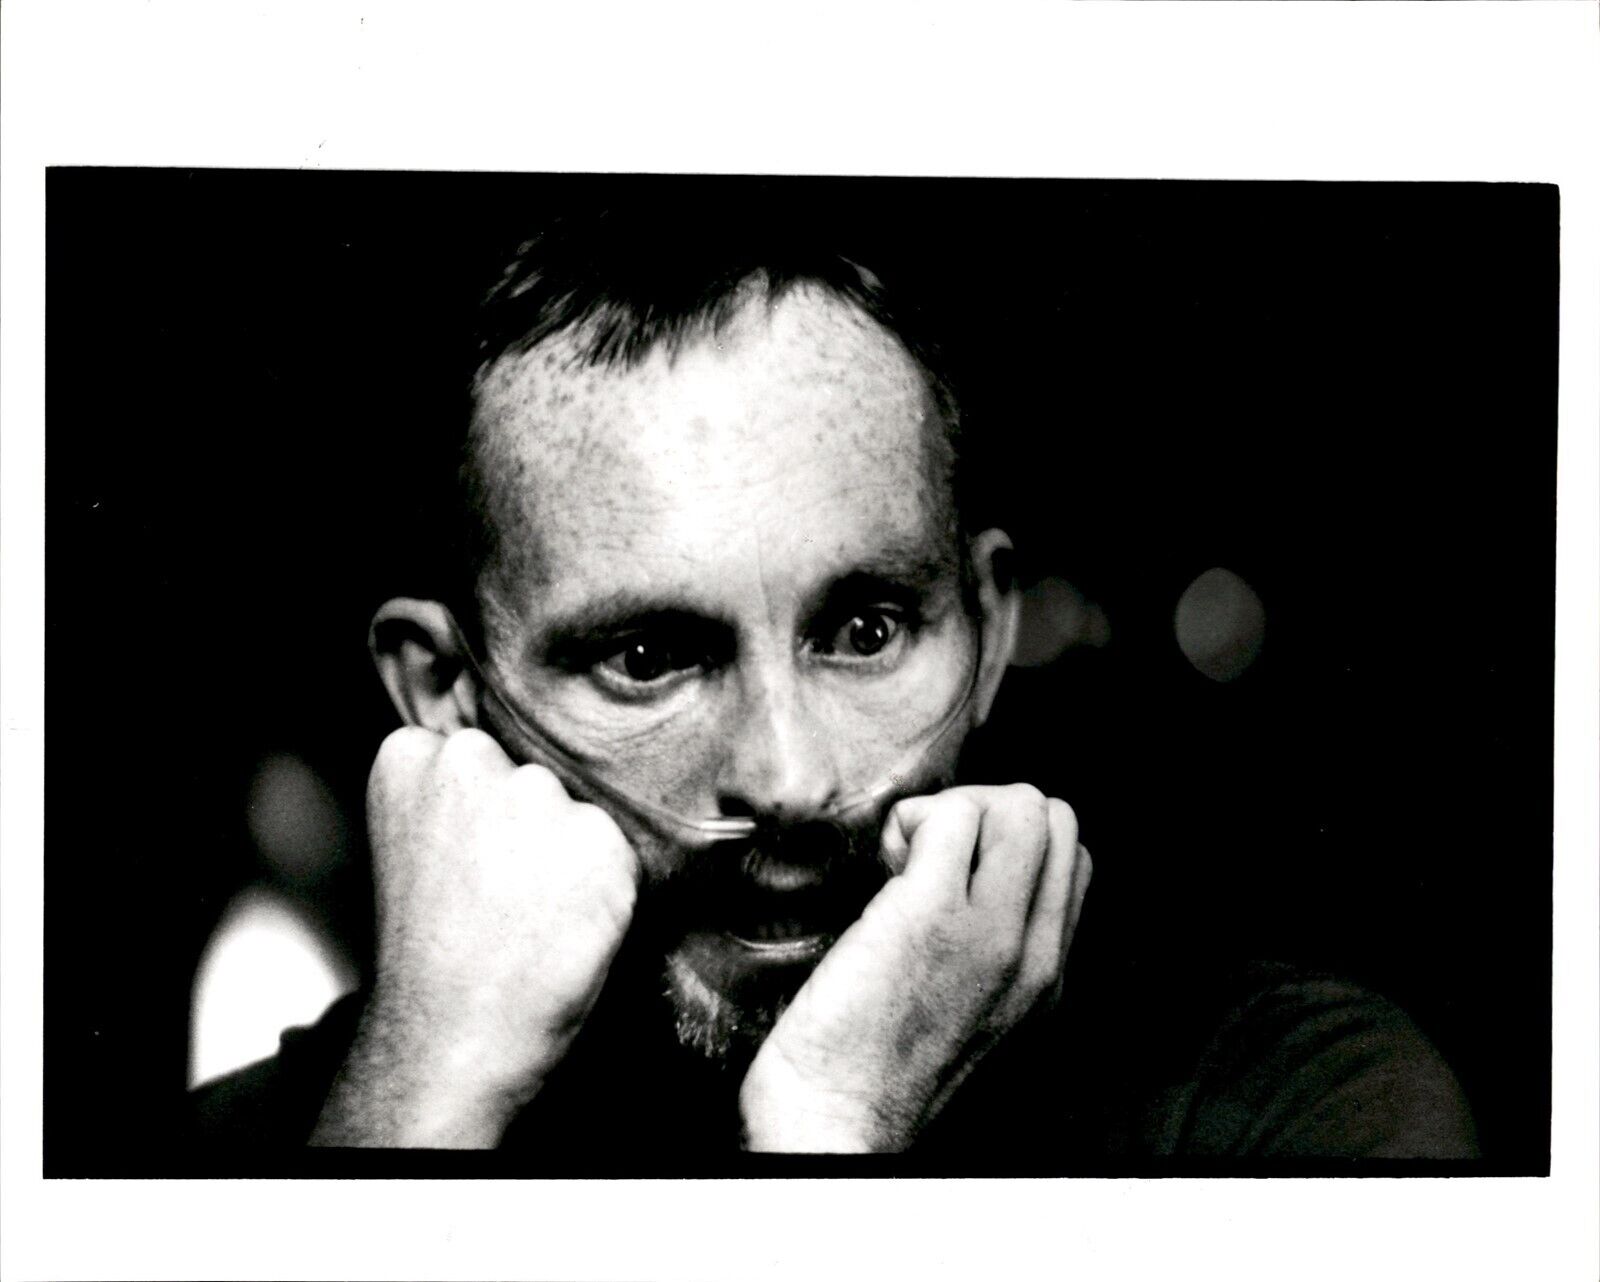 LG23 1987 Original Doug Menuez Photo FACES OF THE AIDS EPIDEMIC Patient Air Tube